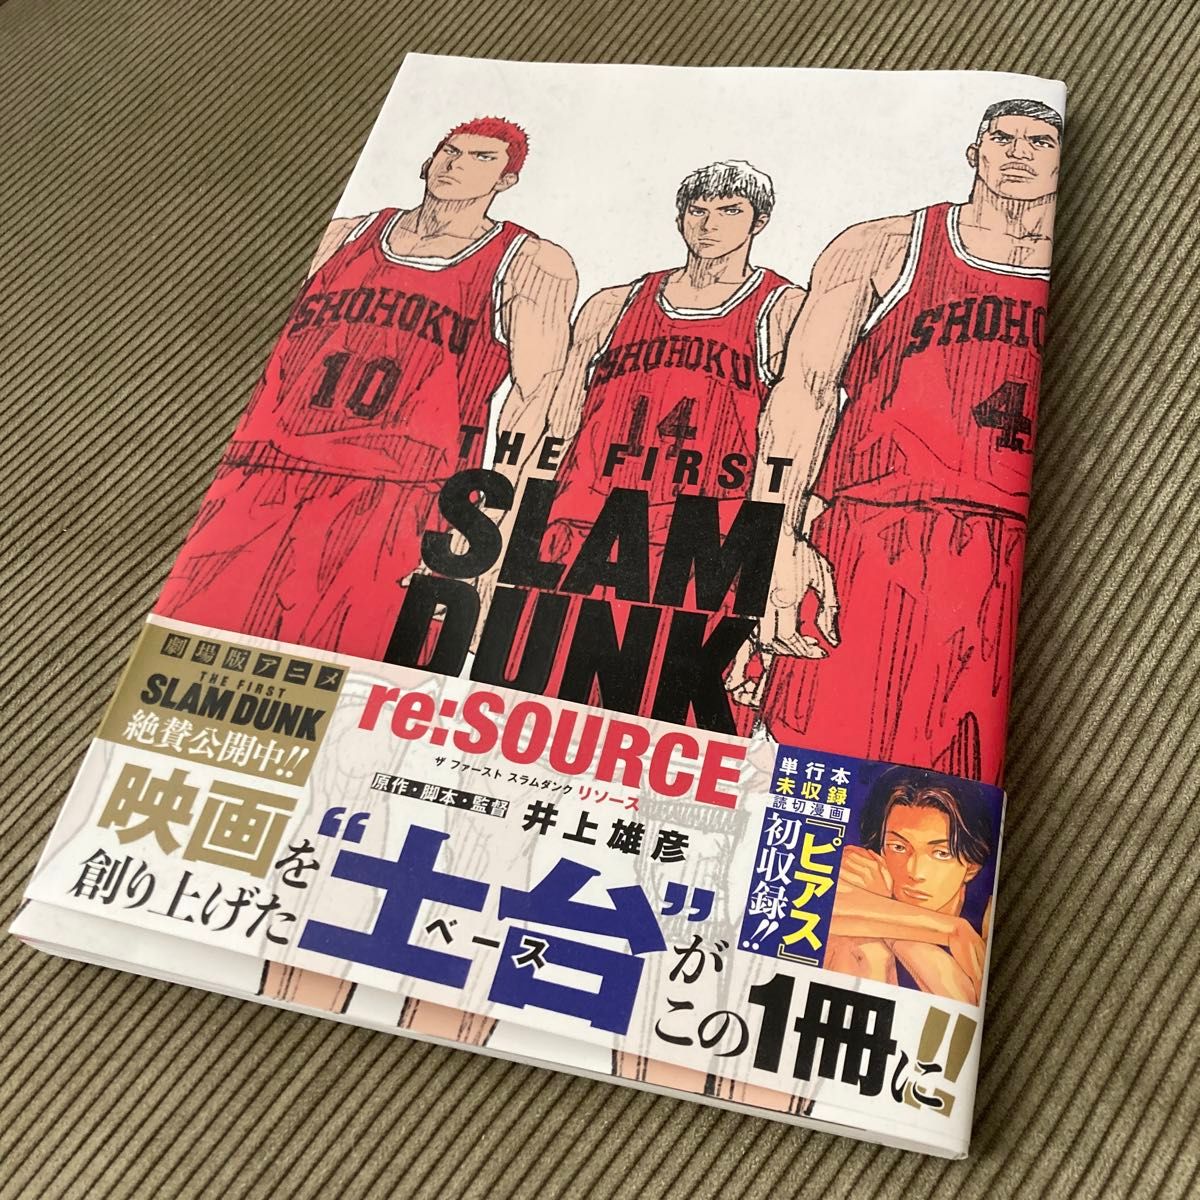 THE  FIRST SLAM DUNK  re: SOURCE 本 コミック 初版 井上雄彦 スラムダンク